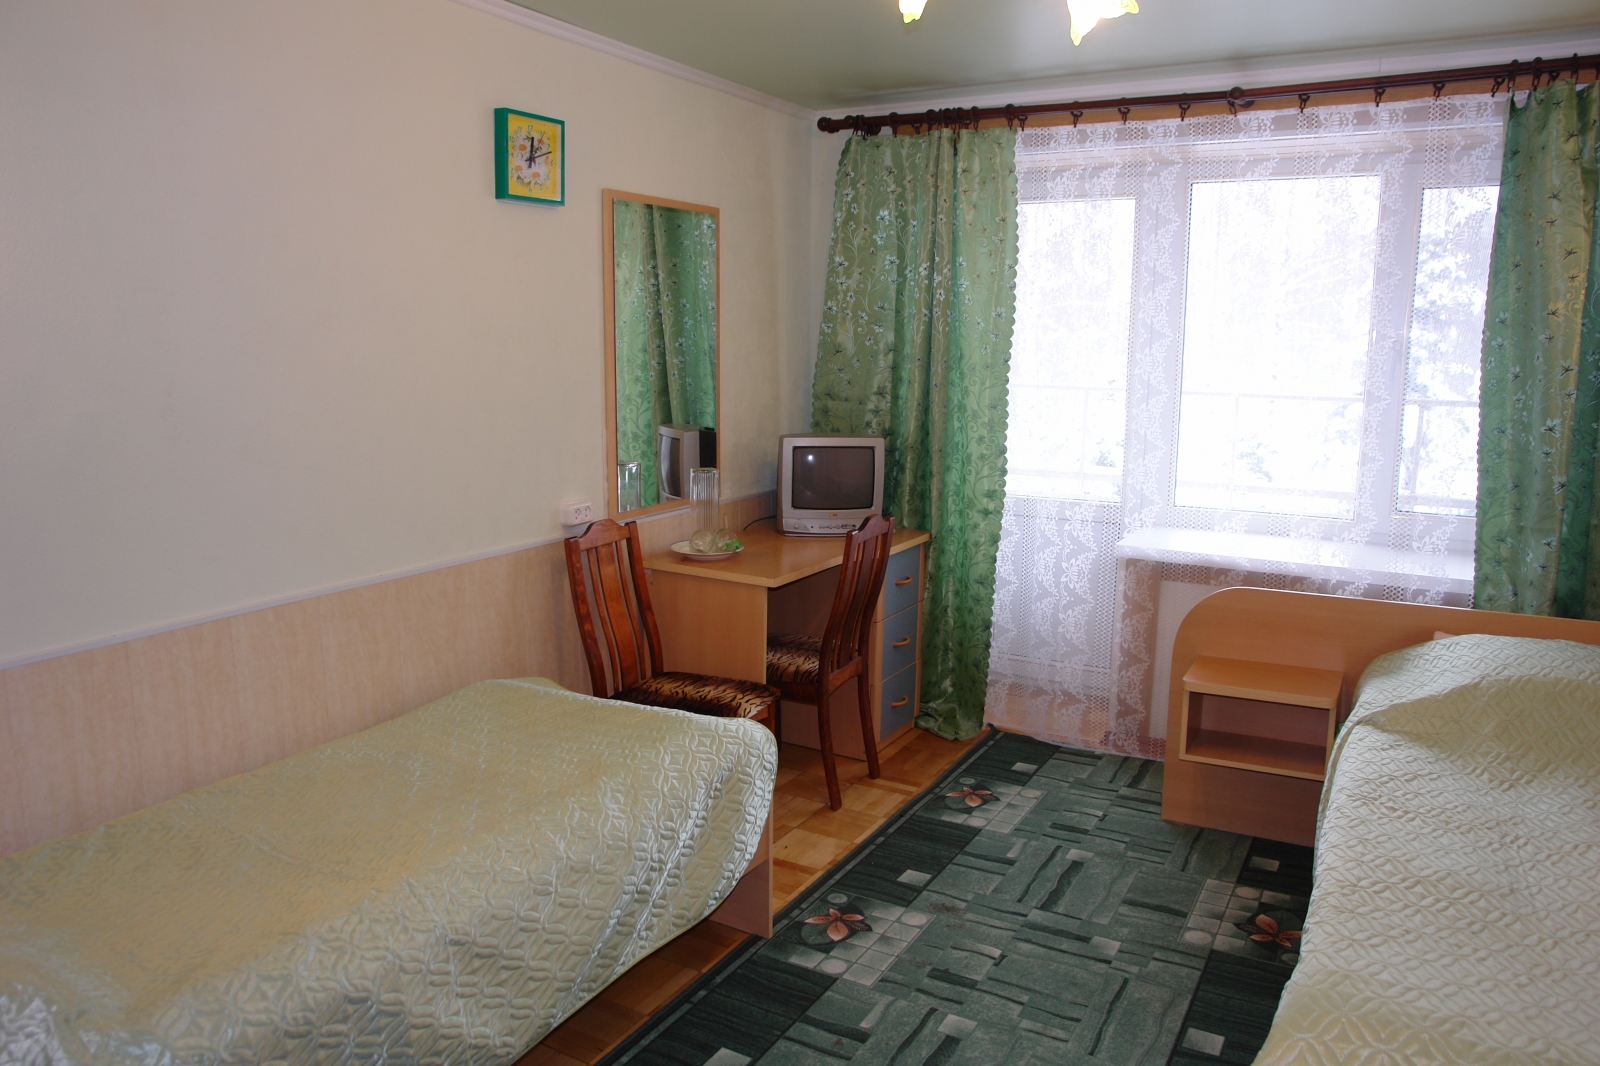 санаторий в балаково саратовская область официальный сайт